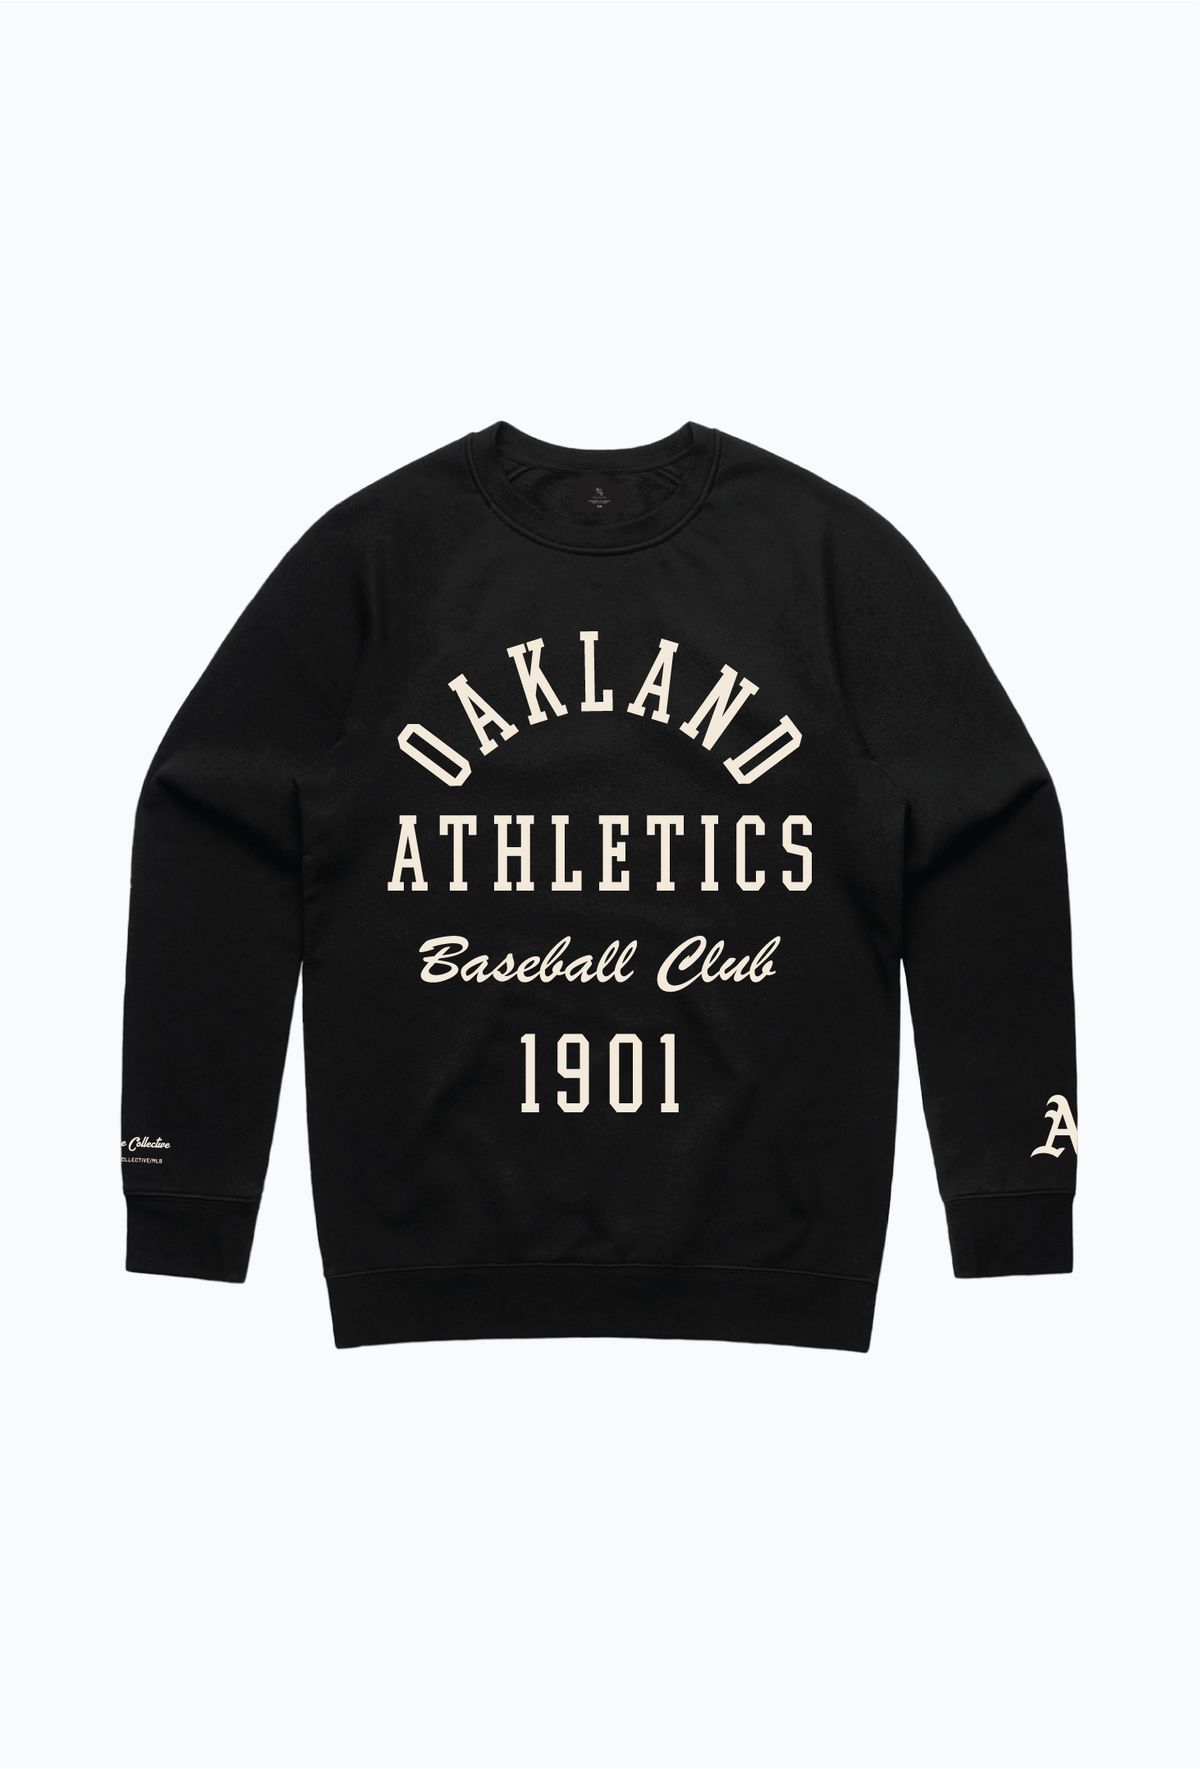 Oakland Athletics Heavyweight Crewneck - Black